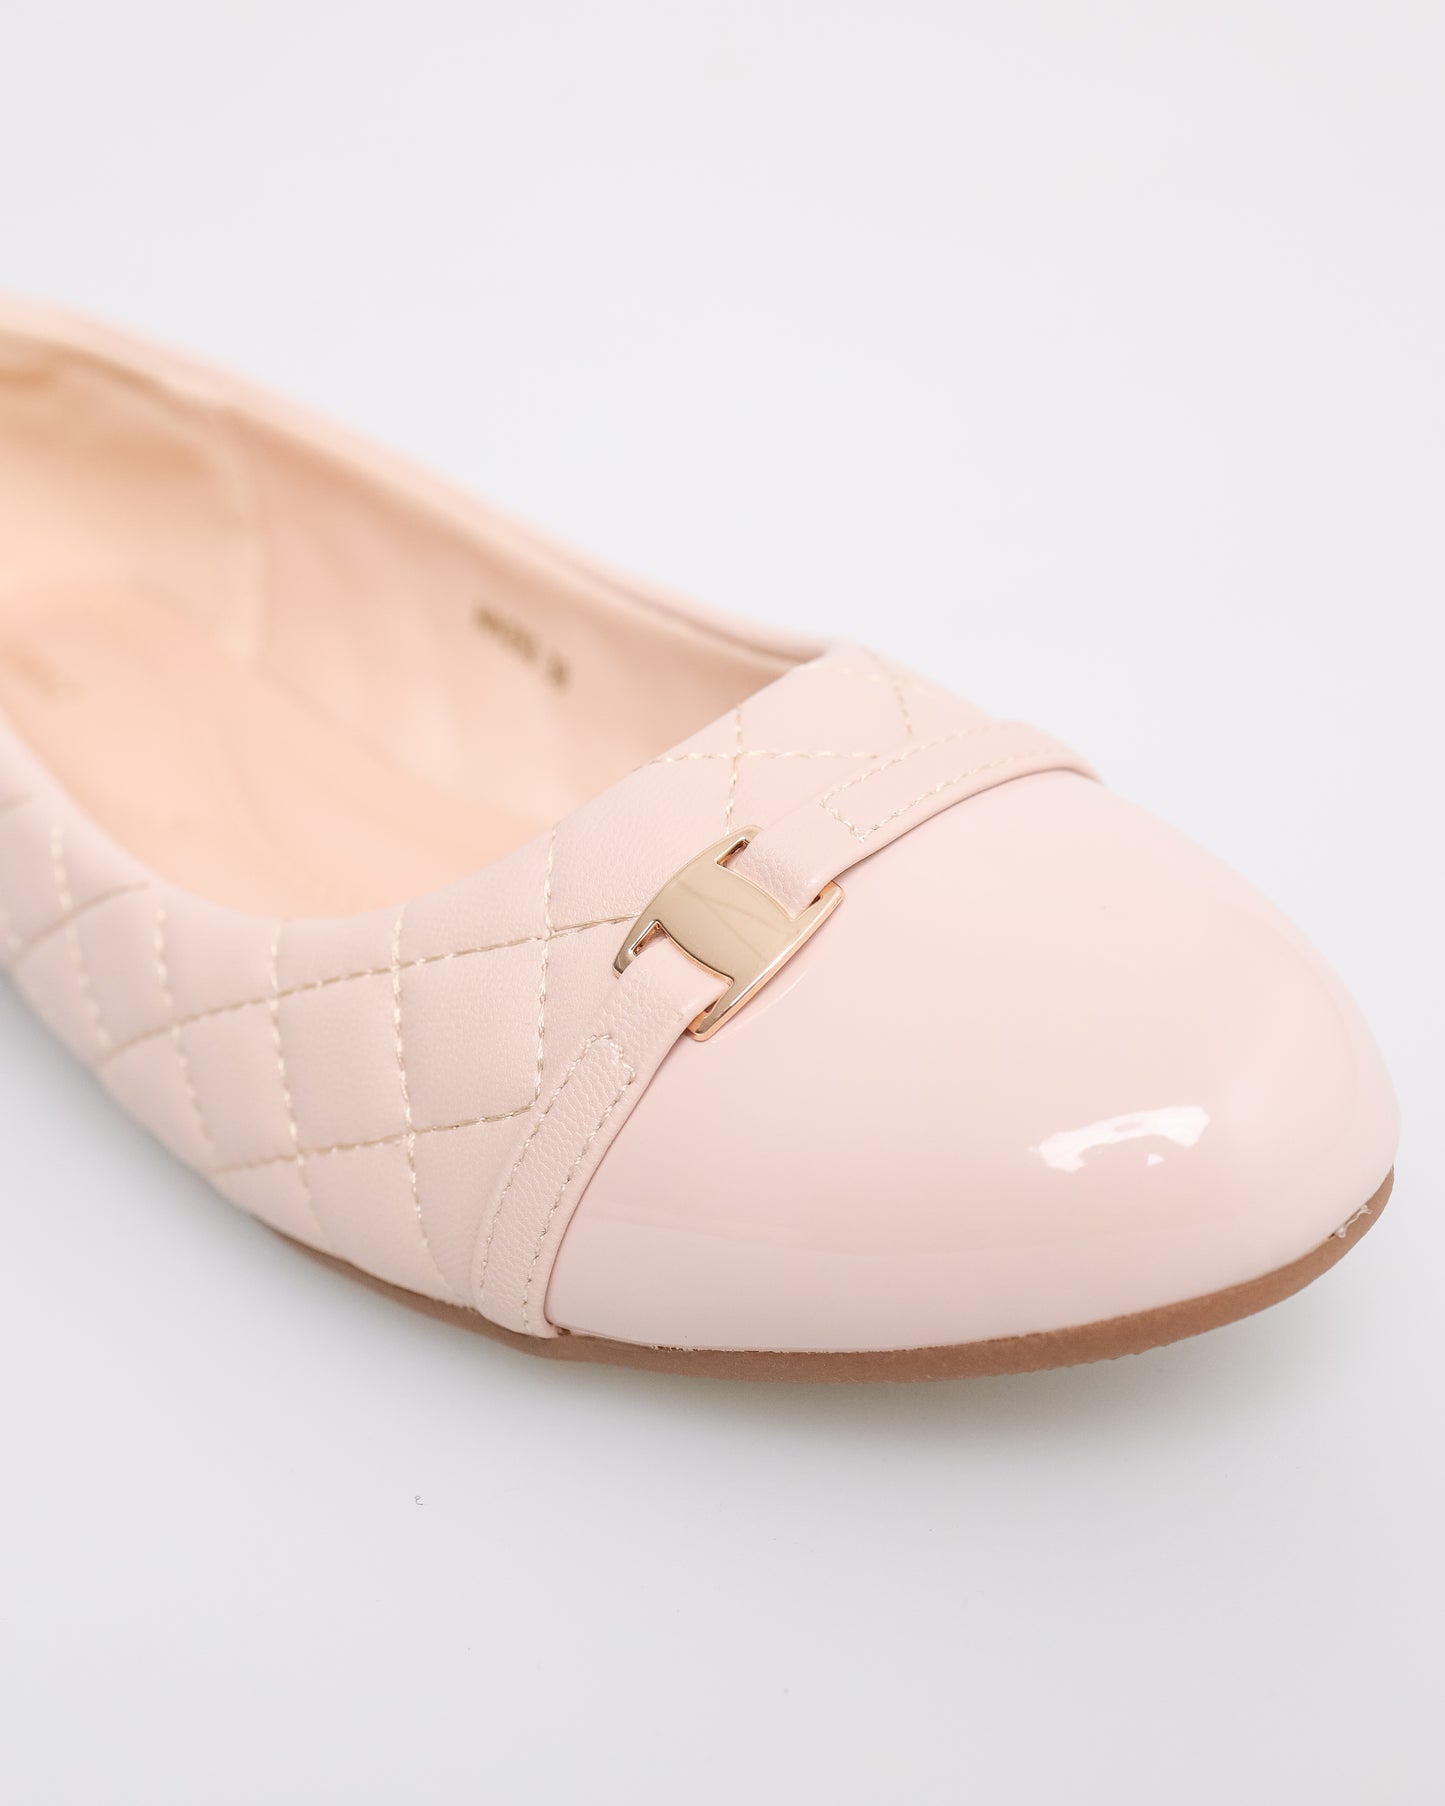 Tomaz NN253 Ladies Quilted Ballet Flats (Beige)